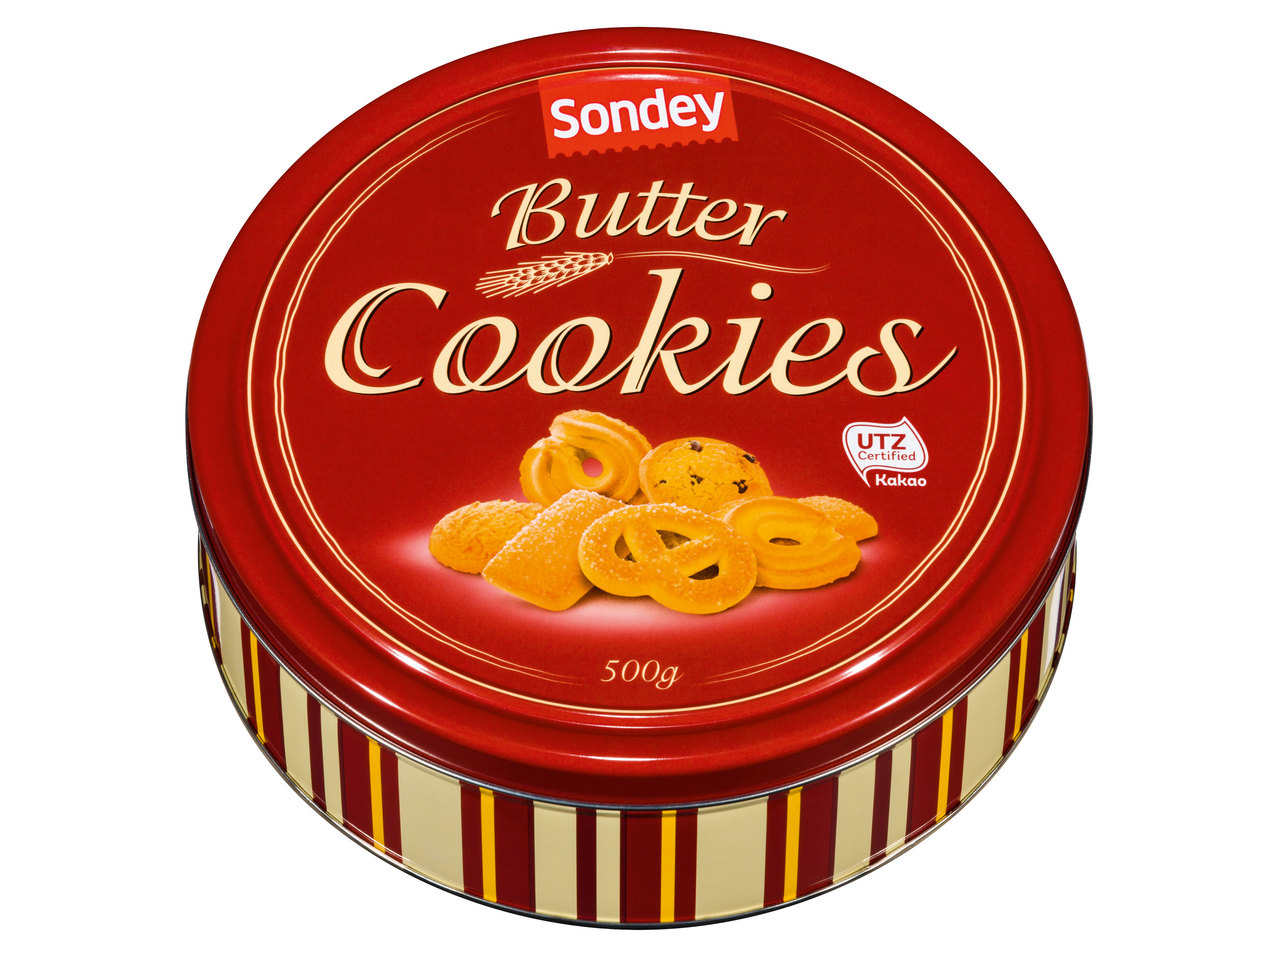 SONDEY Butter Cookies